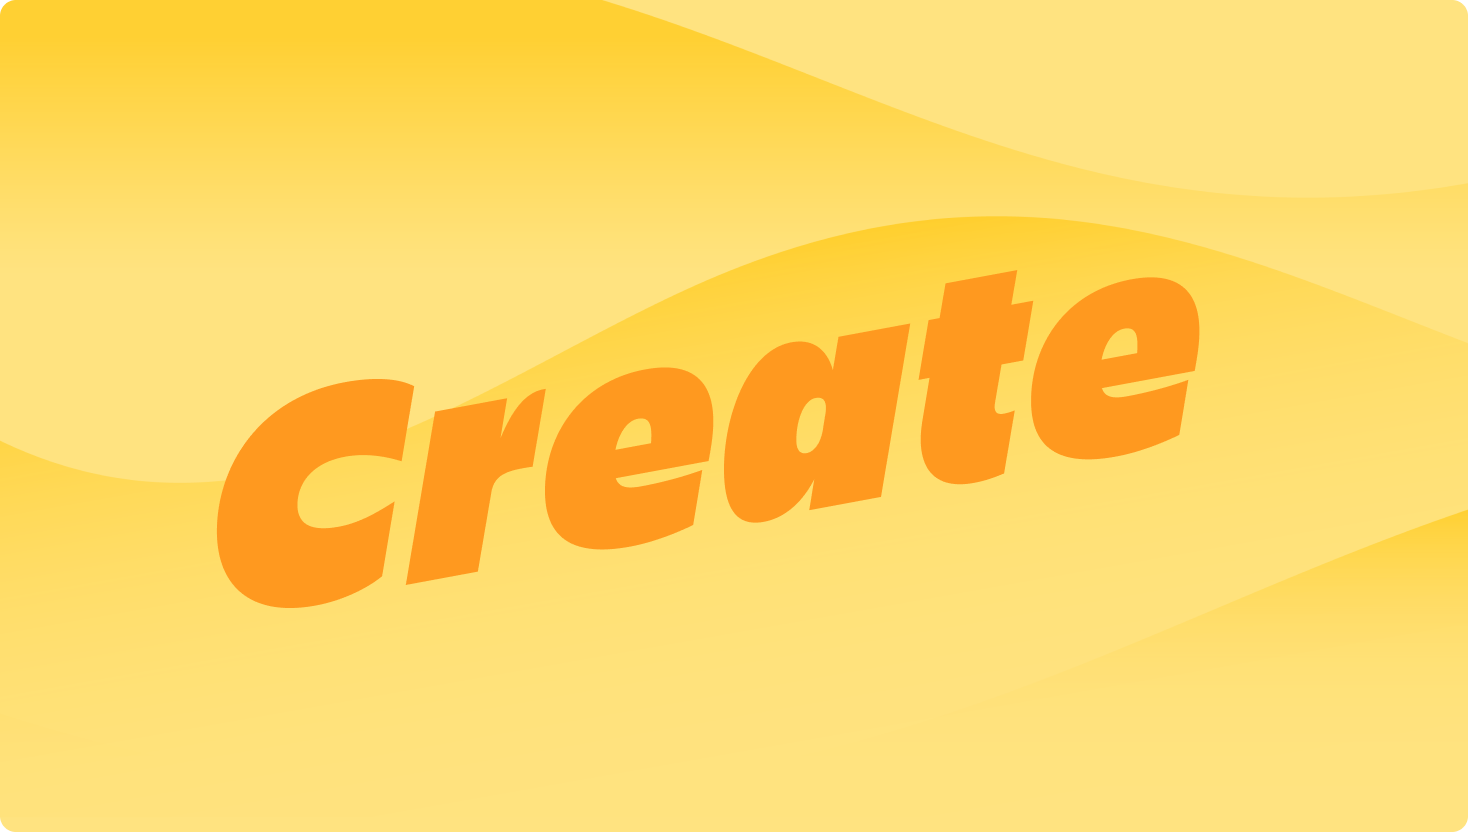 Imagem de onda amarela com a palavra "create" em destaque